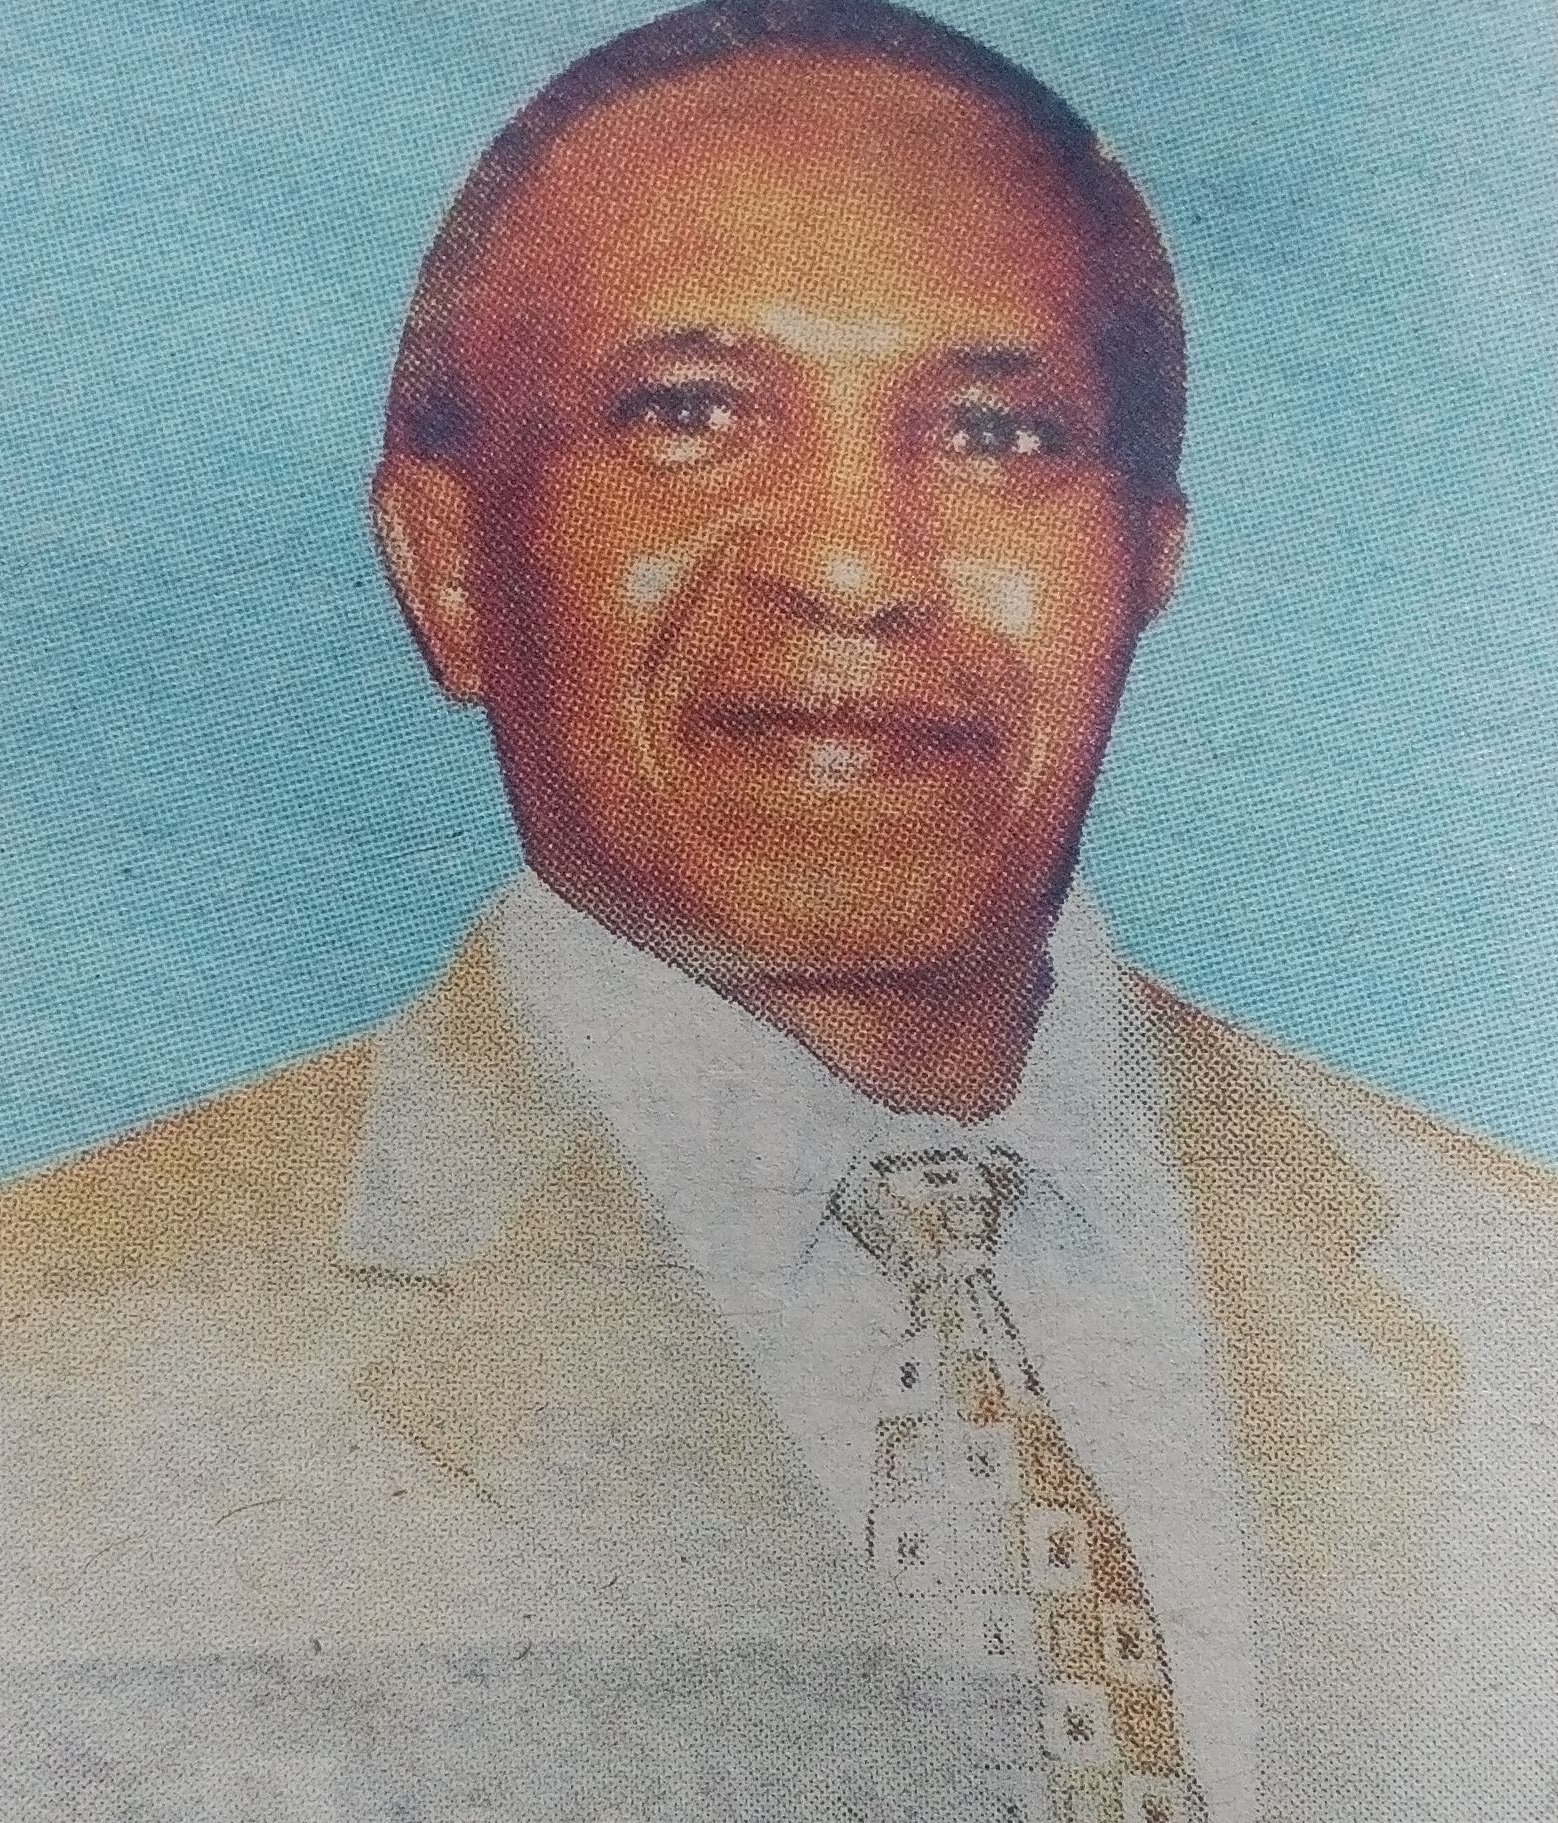 Obituary Image of Dr Edward Munyua Waiyaki